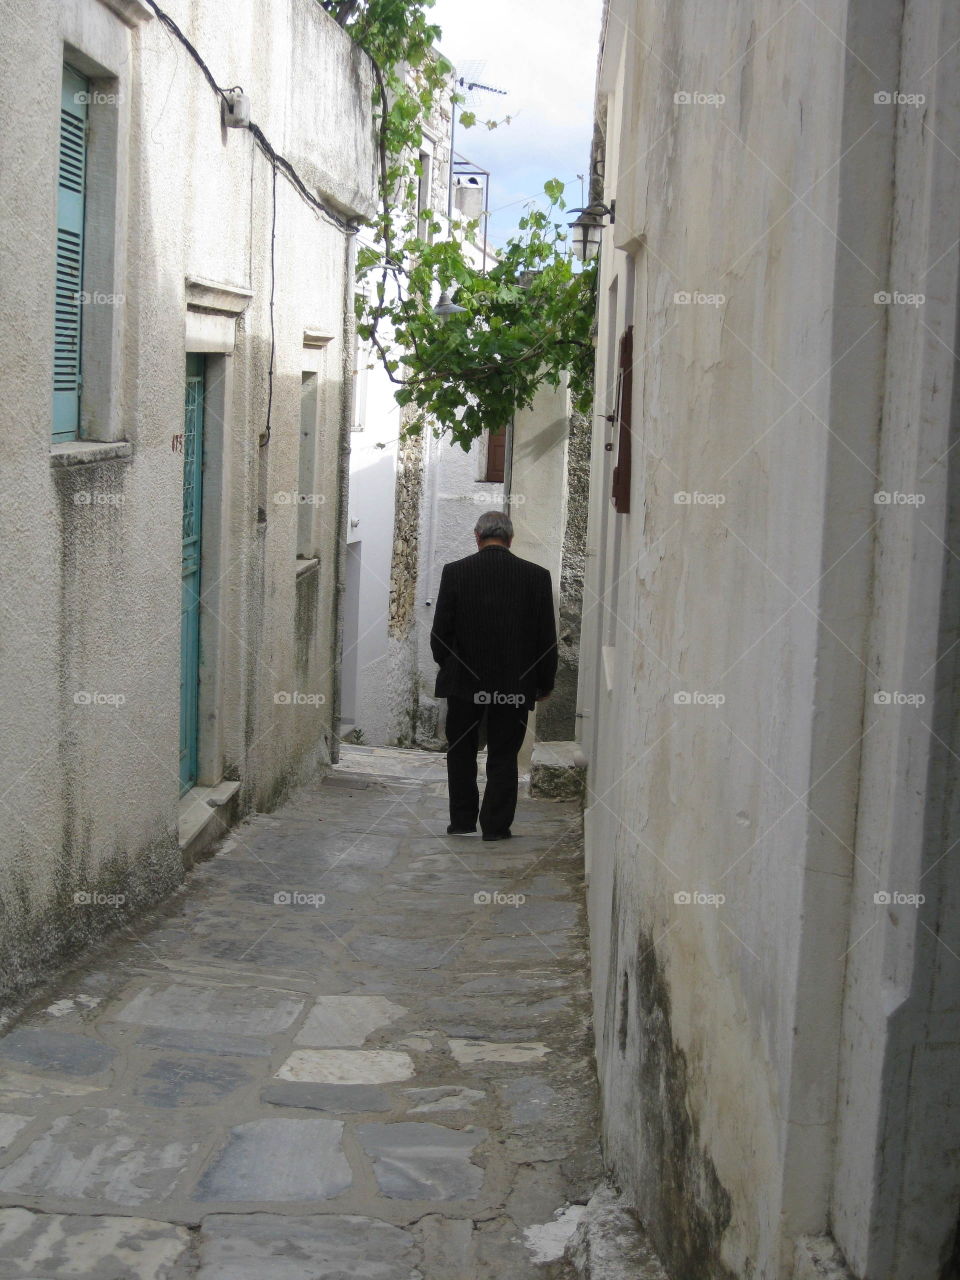 Afternoon walk on a Greek island